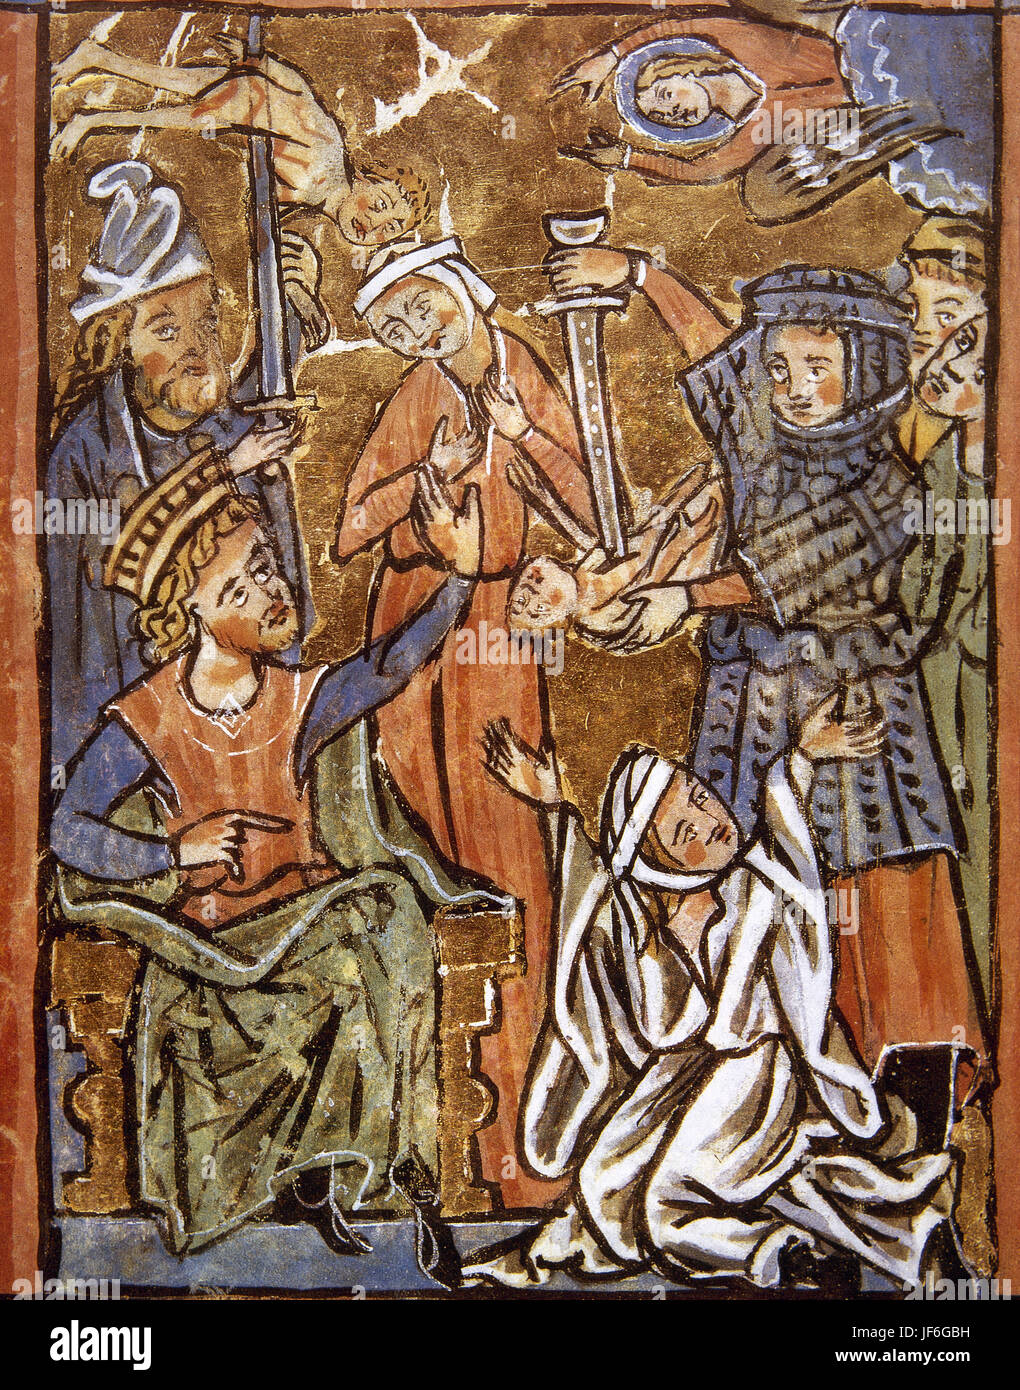 Wenn Massaker der unschuldigen. Herodes der große Sitiing auf dem Thron. Miniatur. Psalter, 15. Jahrhundert. Stockfoto